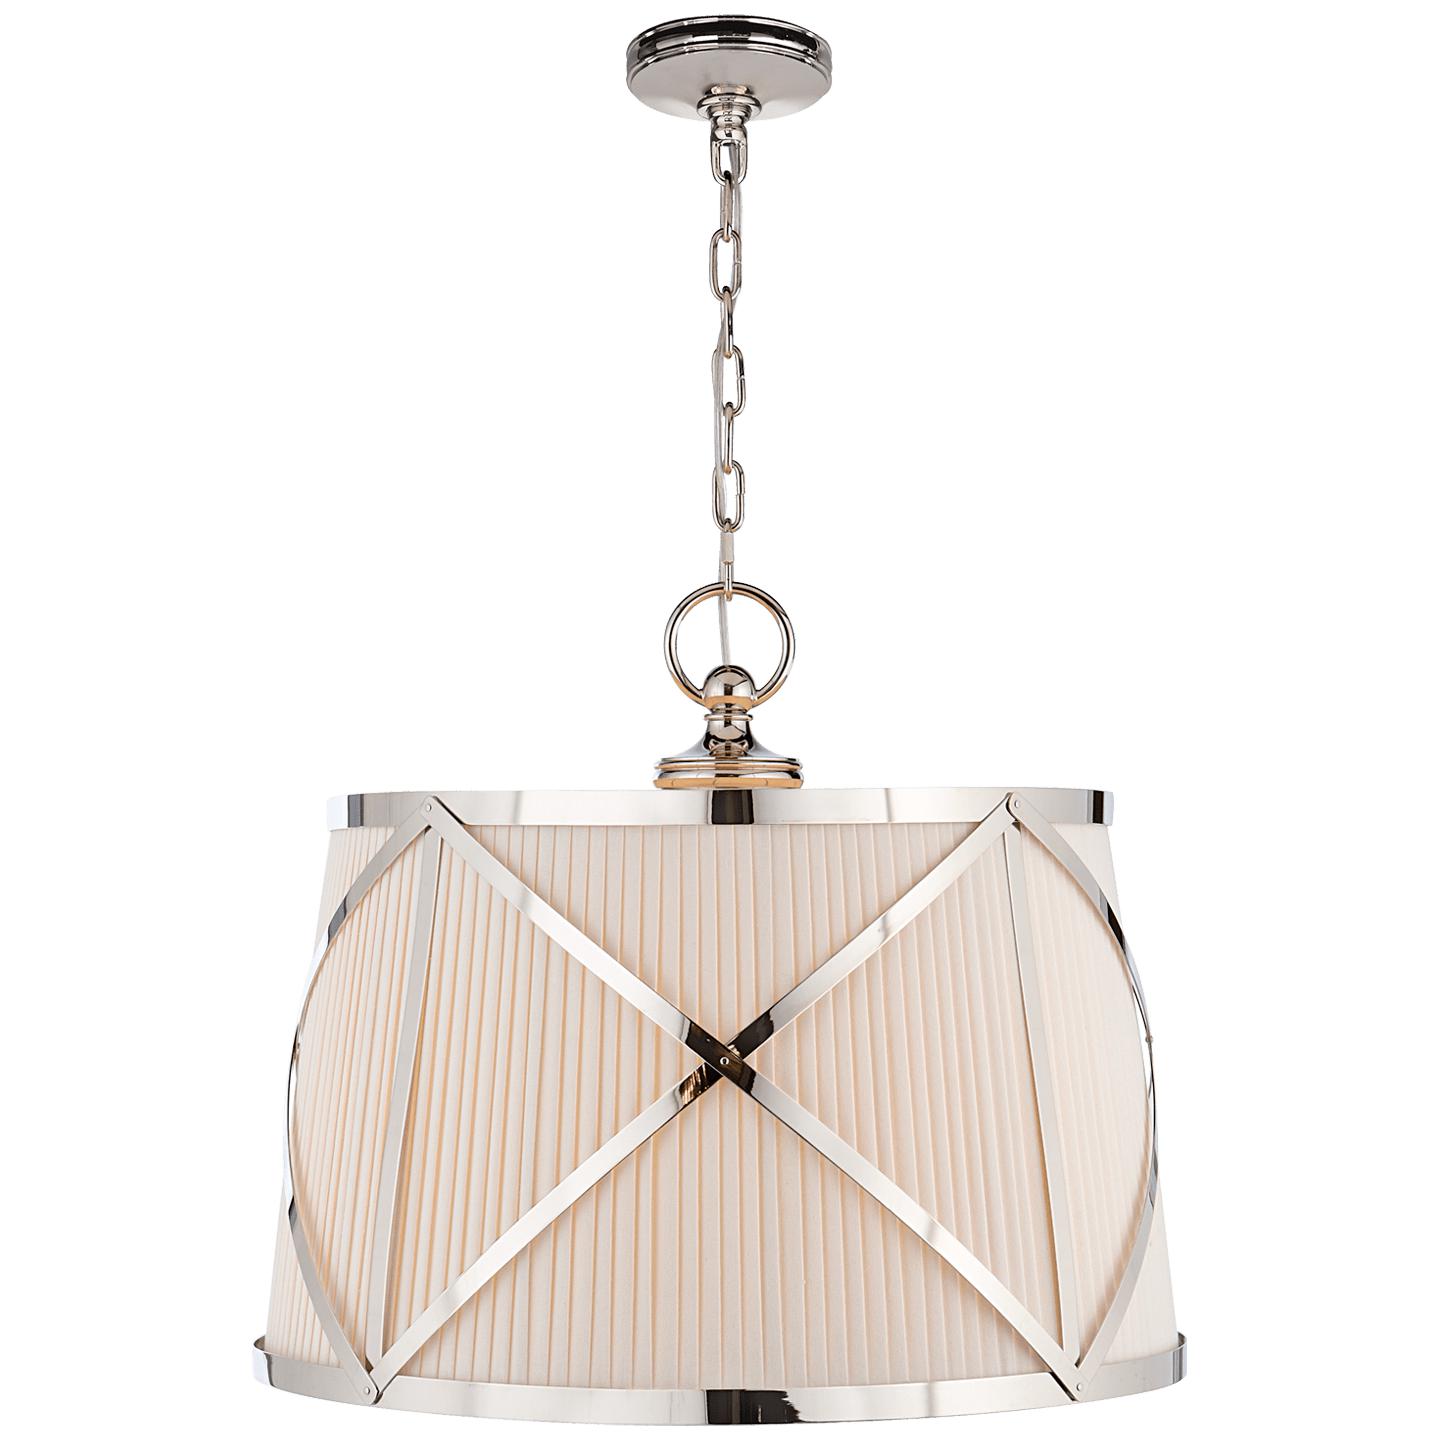 Купить Подвесной светильник Grosvenor Large Single Hanging Shade в интернет-магазине roooms.ru